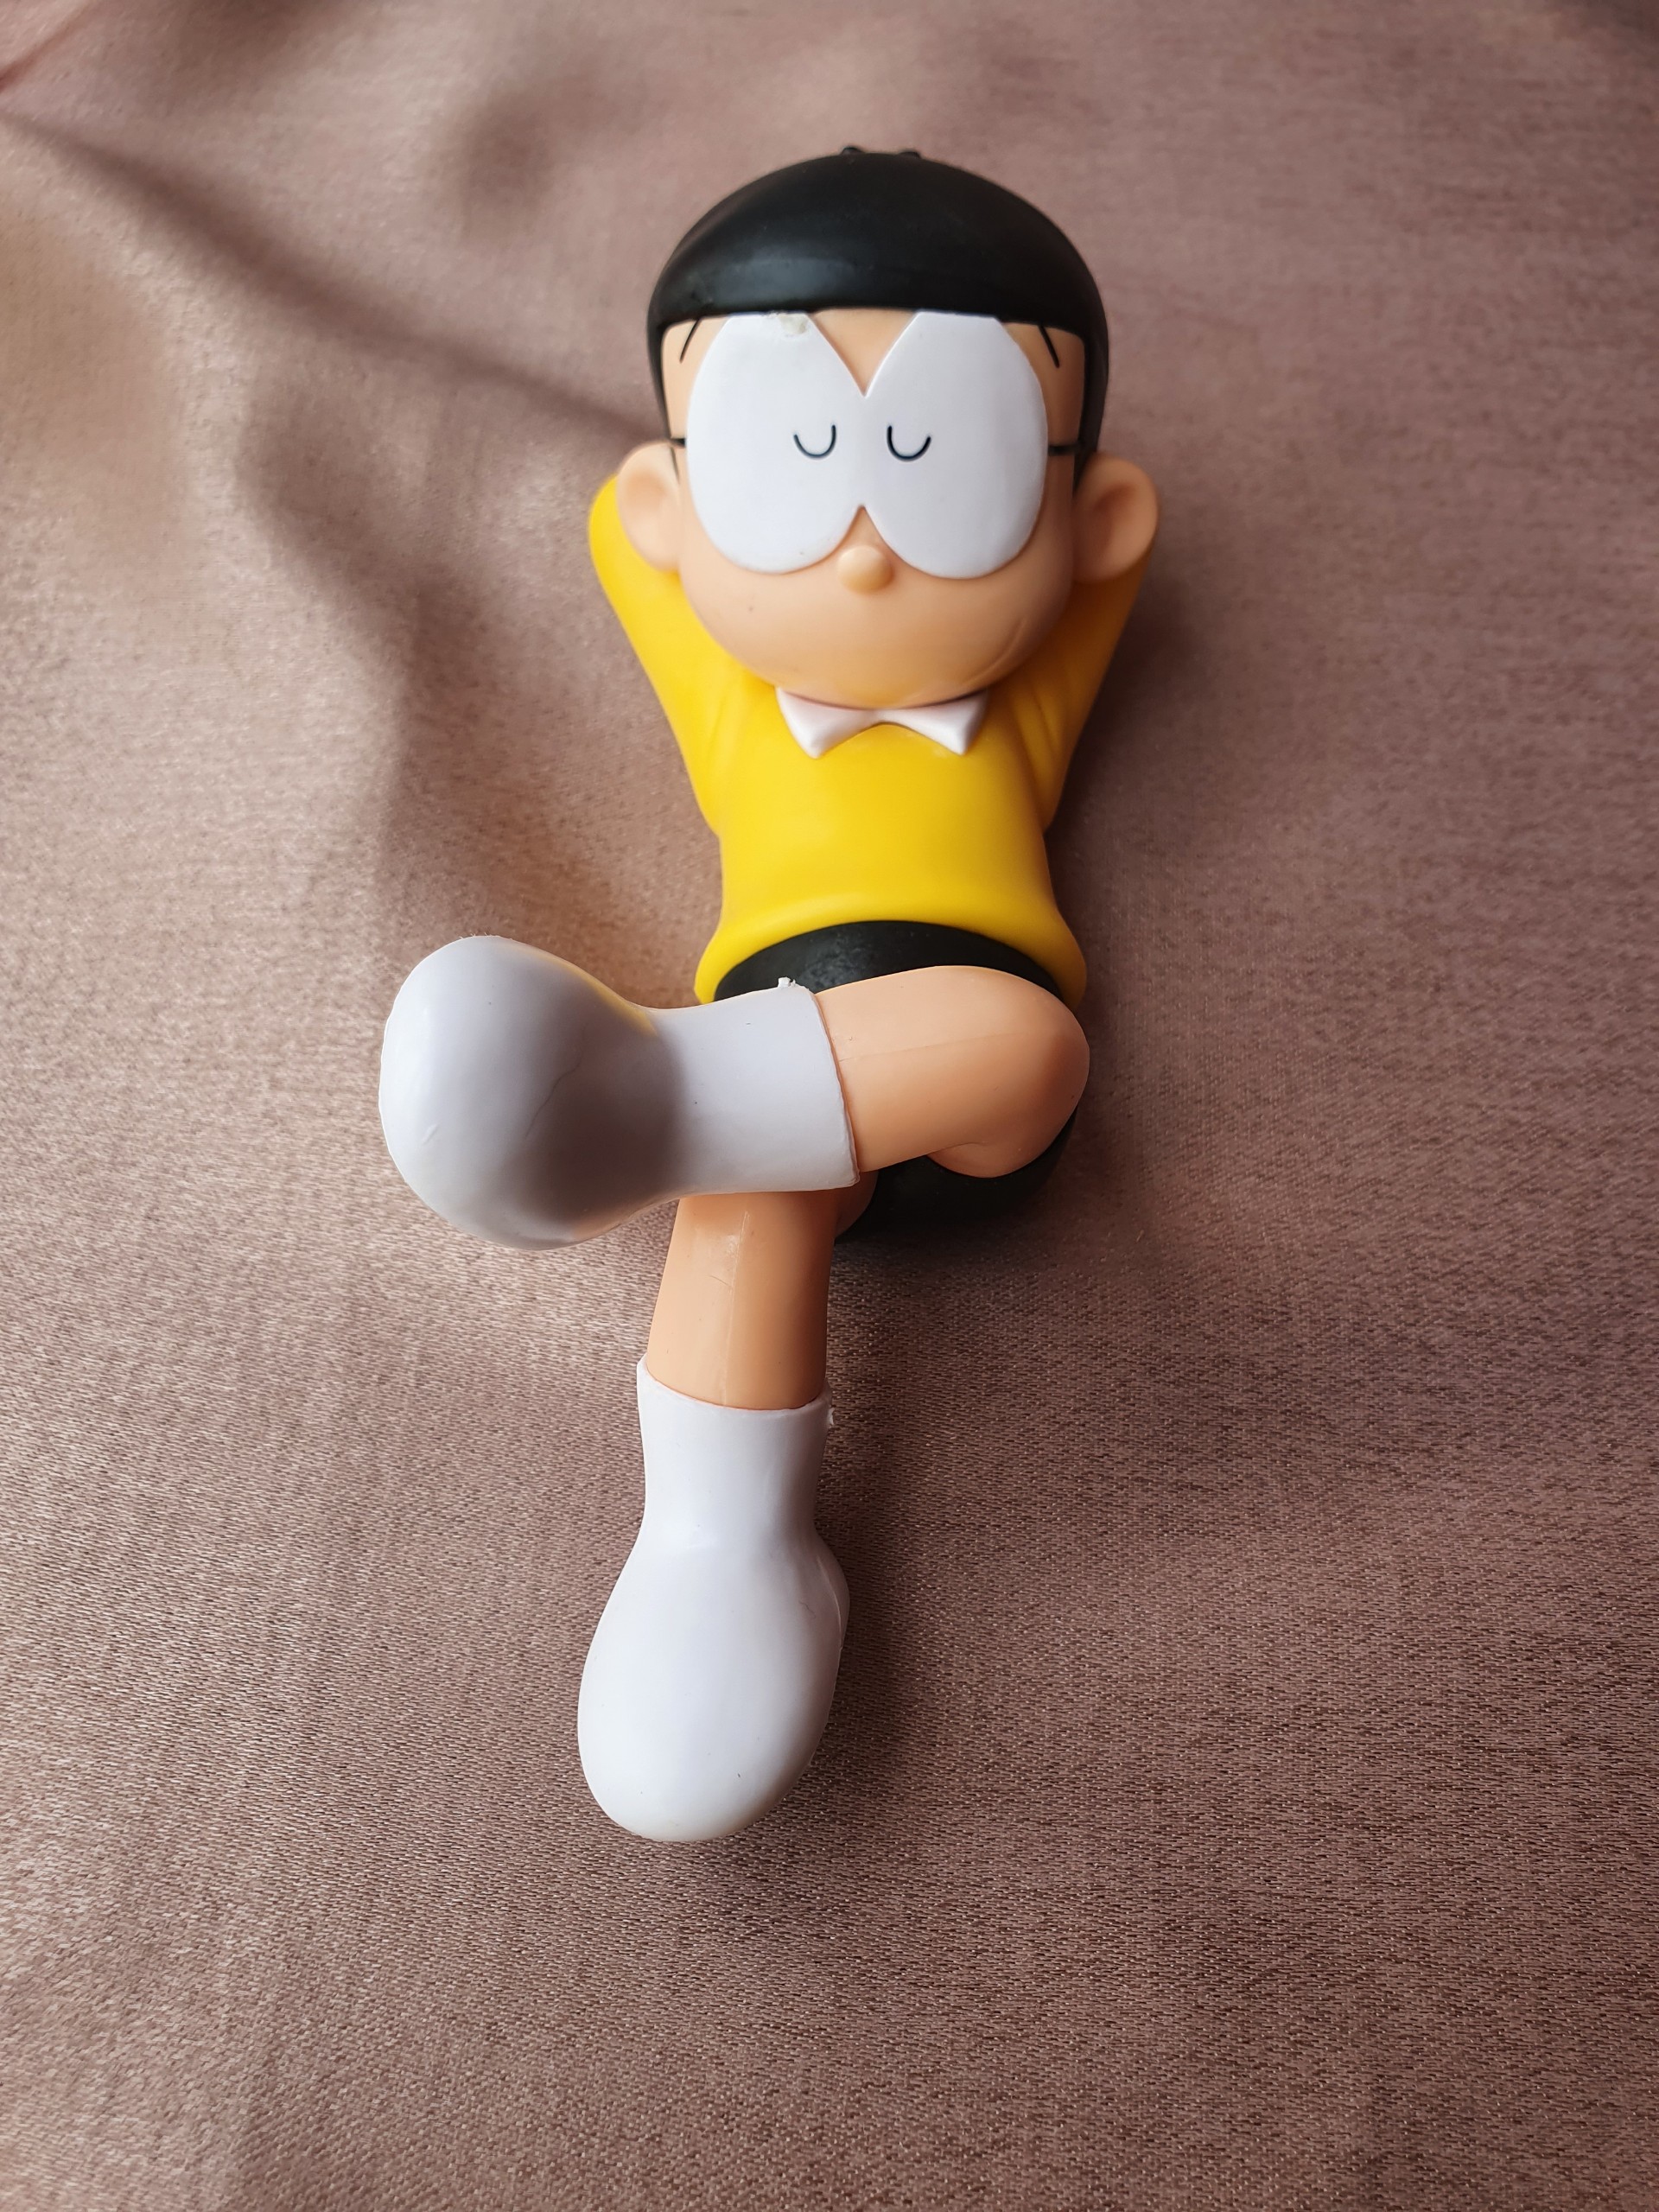 Mô Hình Nobi Nobita Nằm Lười Biếng - Doraemon Giá Tốt - BBCosplay.com